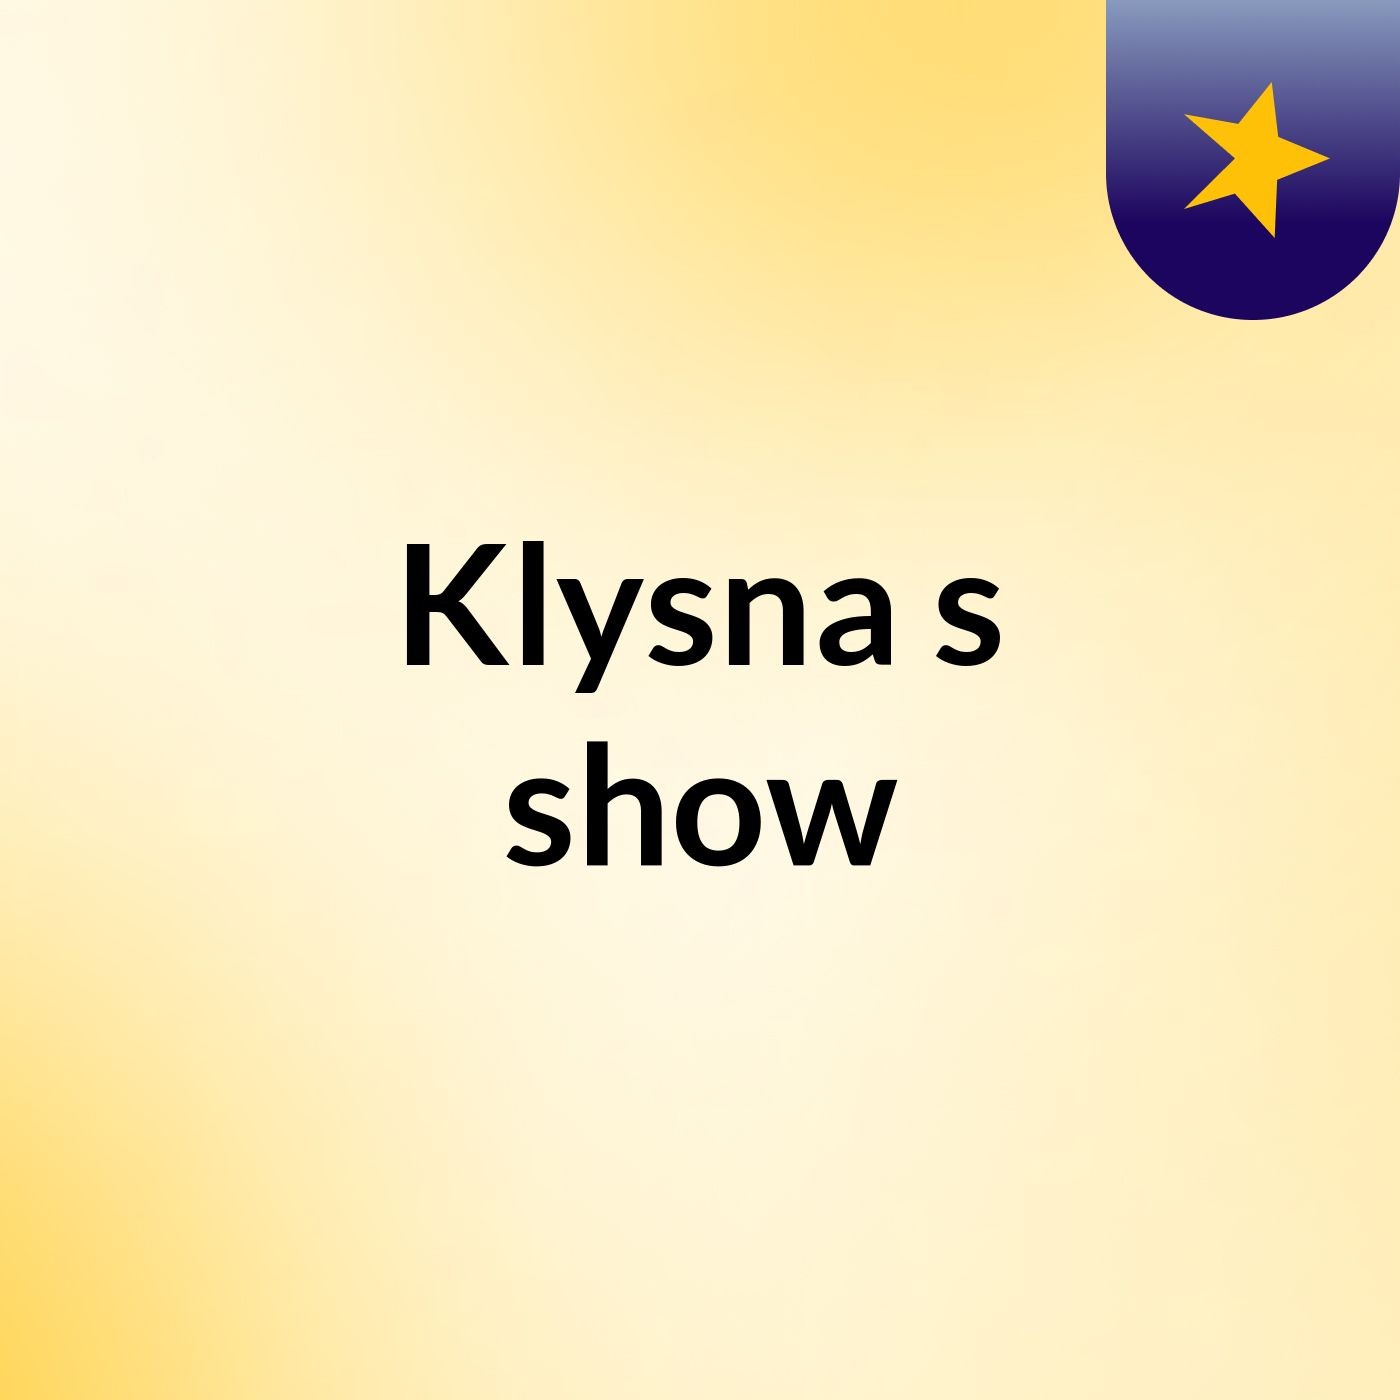 Klysna's show